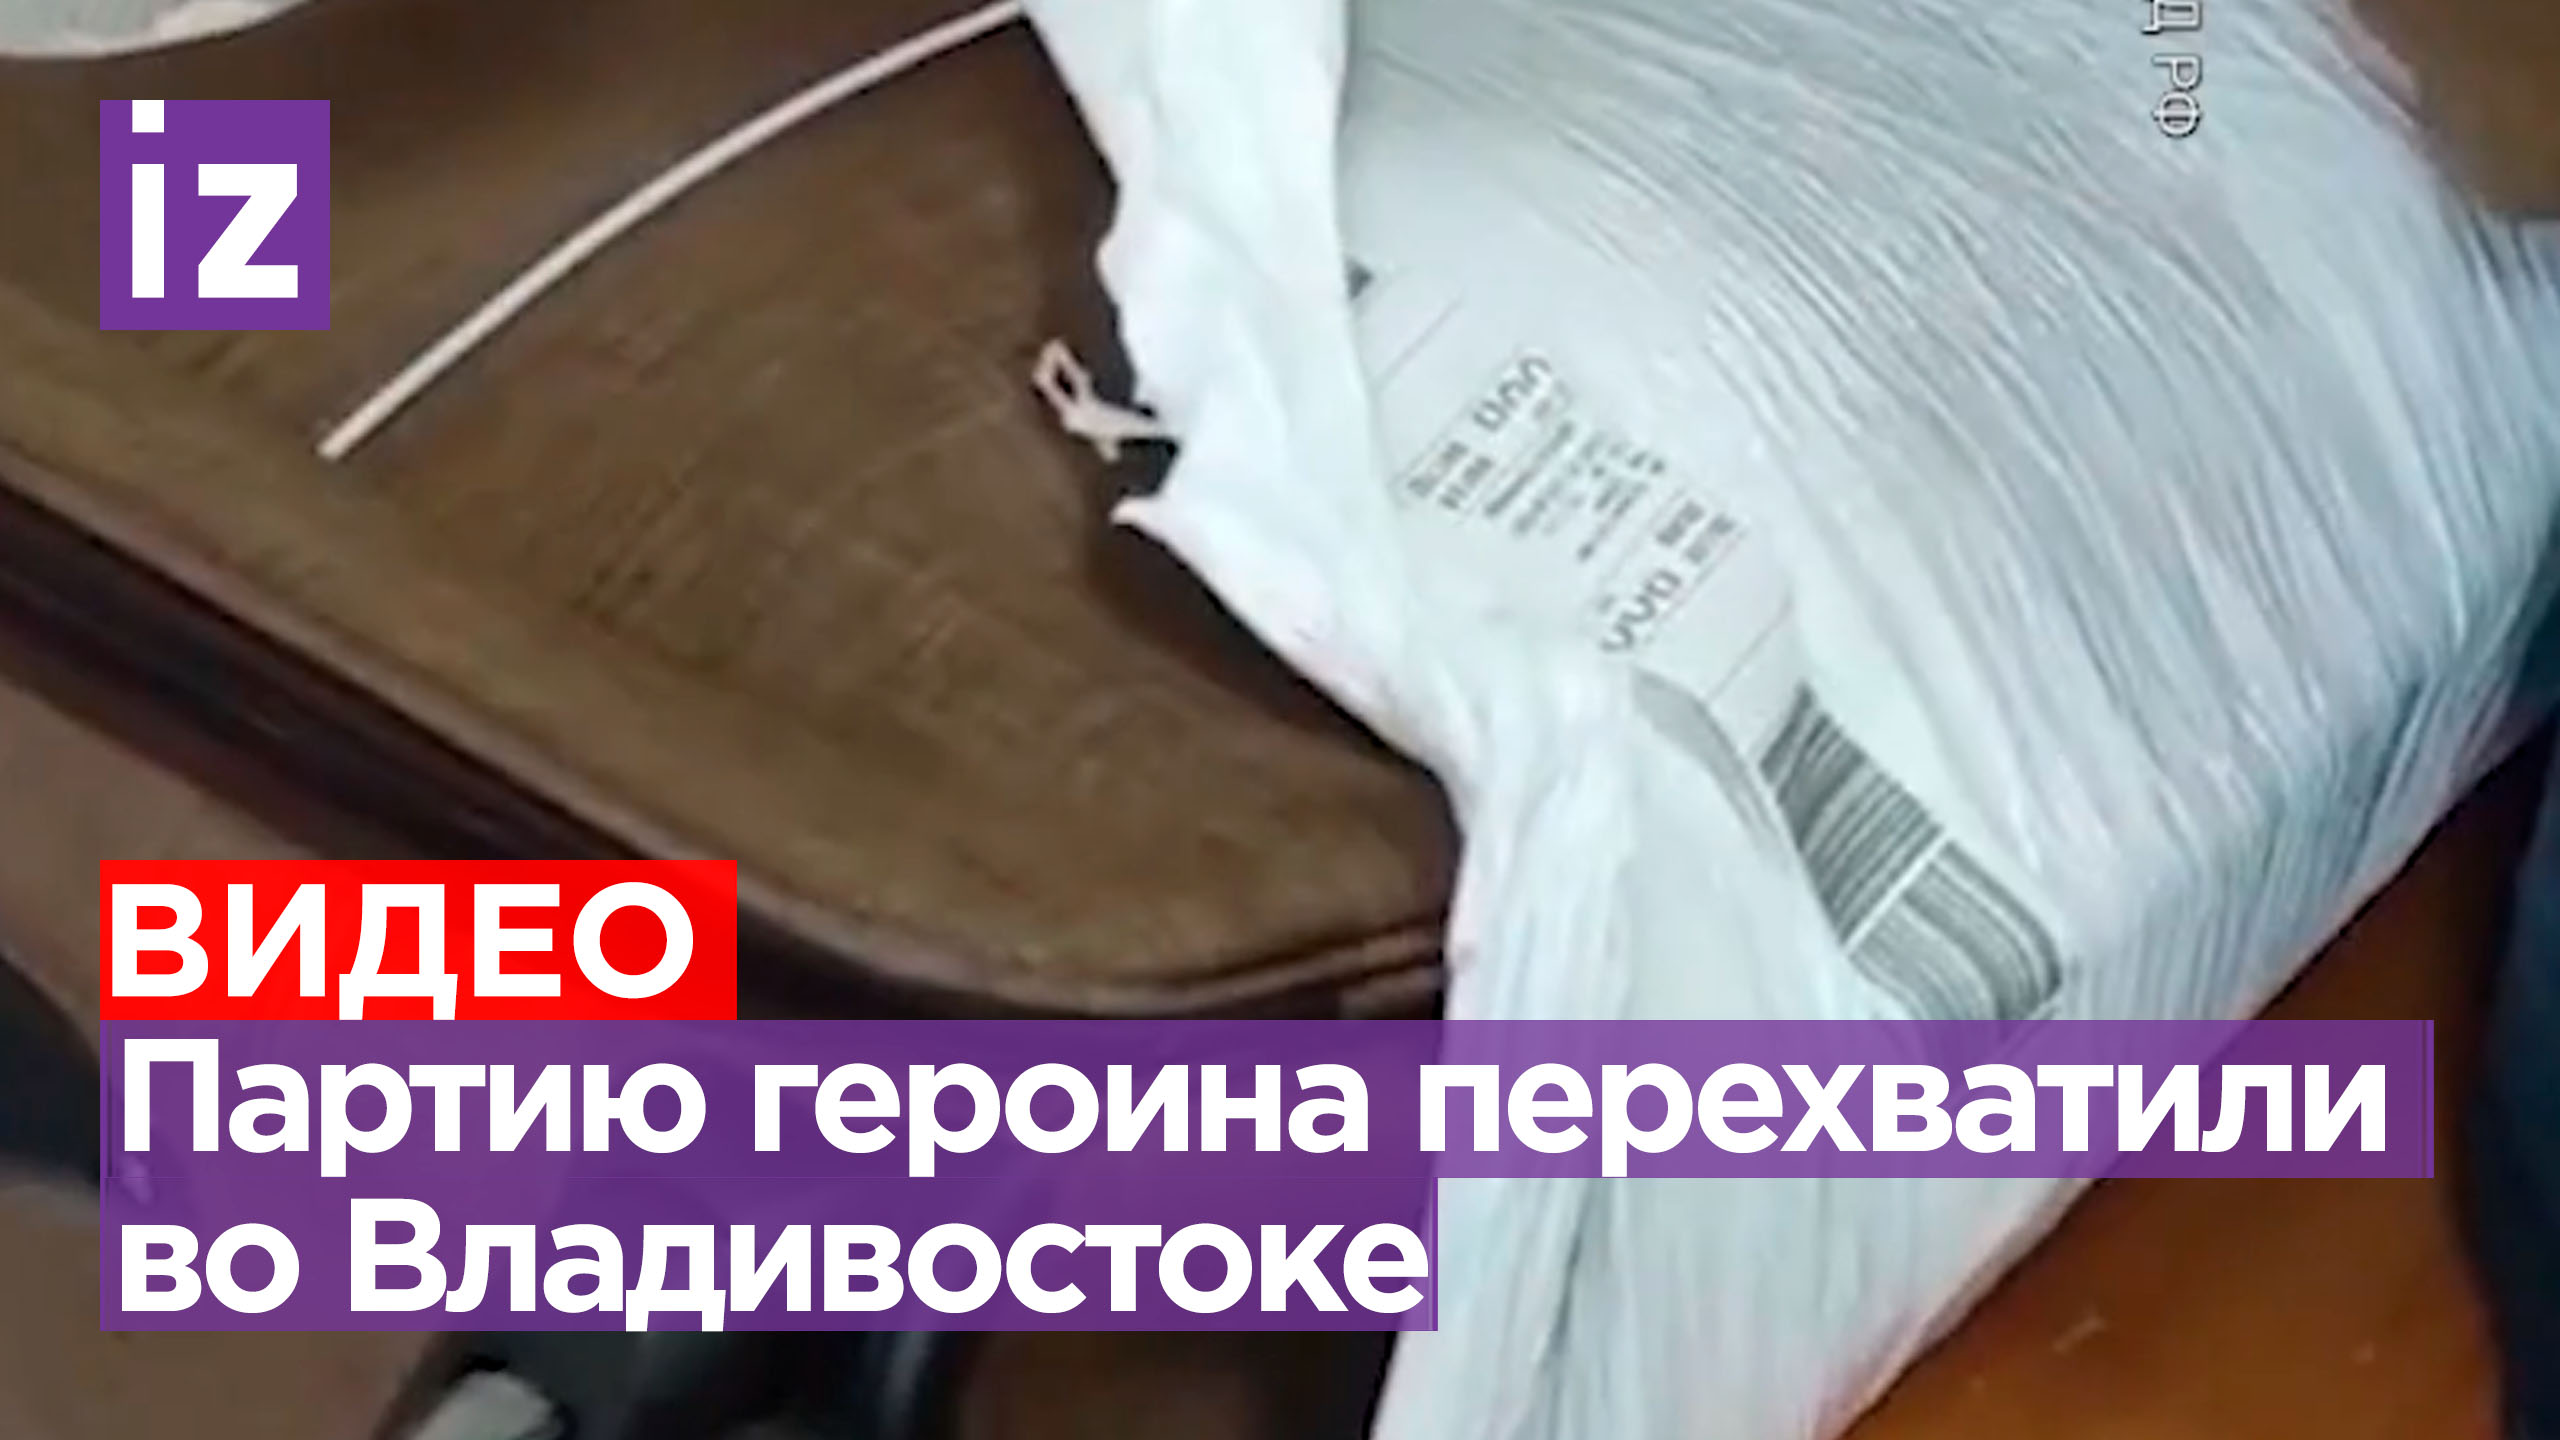 В аэропорту Владивостока перехватили 2 кг героина